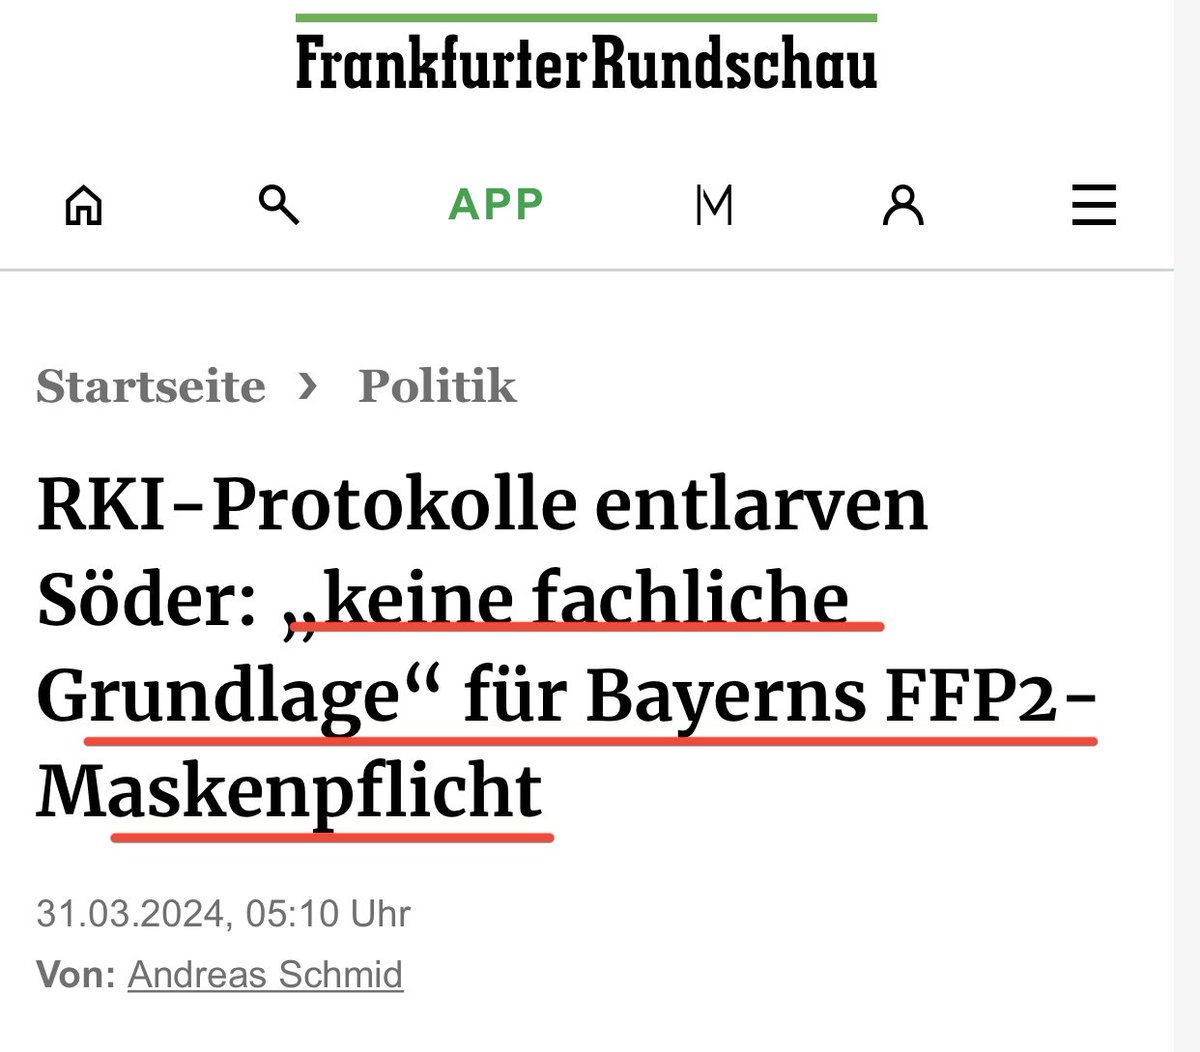 Im Januar 2021 wird in Bayern eine FFP2-Maskenpflicht verhängt. Entgegen den Empfehlungen des RKI. Es gab zu keiner Zeit eine Evidenz für diese Maskenpflicht. #RKIFiles Diese Maßnahme war vermutlich eine politische Entscheidung des bayerischen Ministerpräsidenten und der…